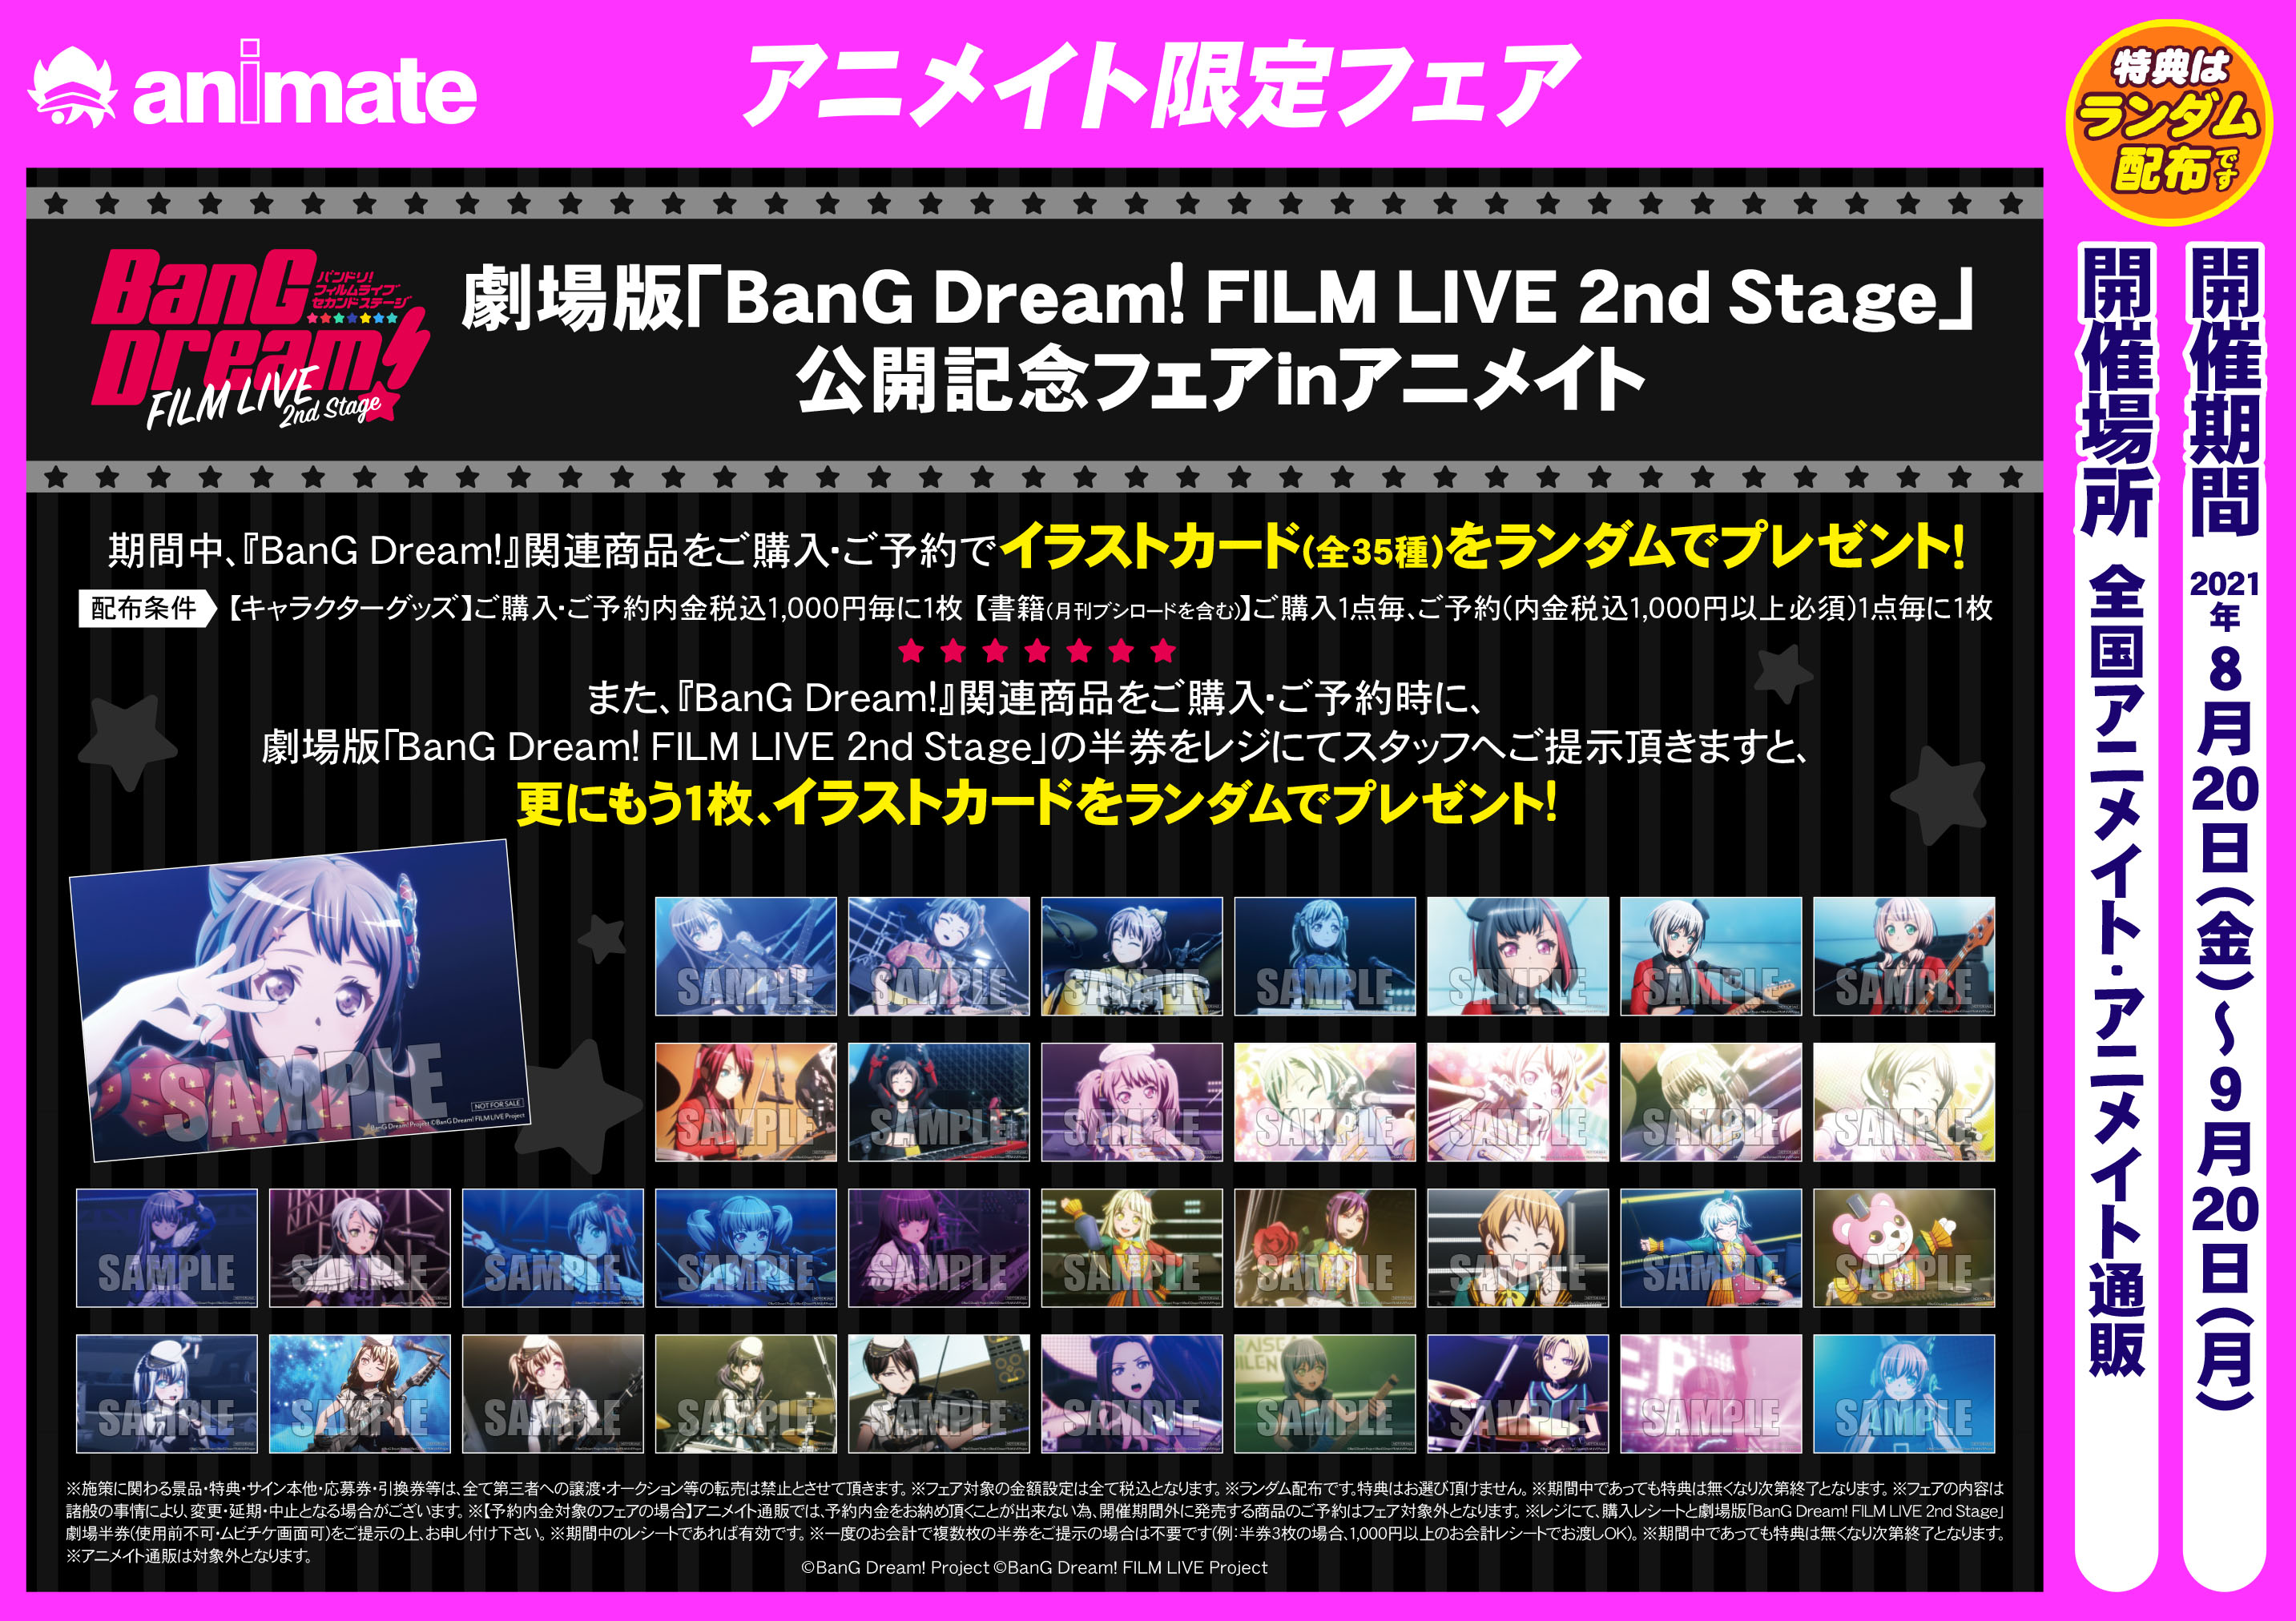 劇場版「BanG Dream! FILM LIVE 2nd Stage」公開記念フェアin